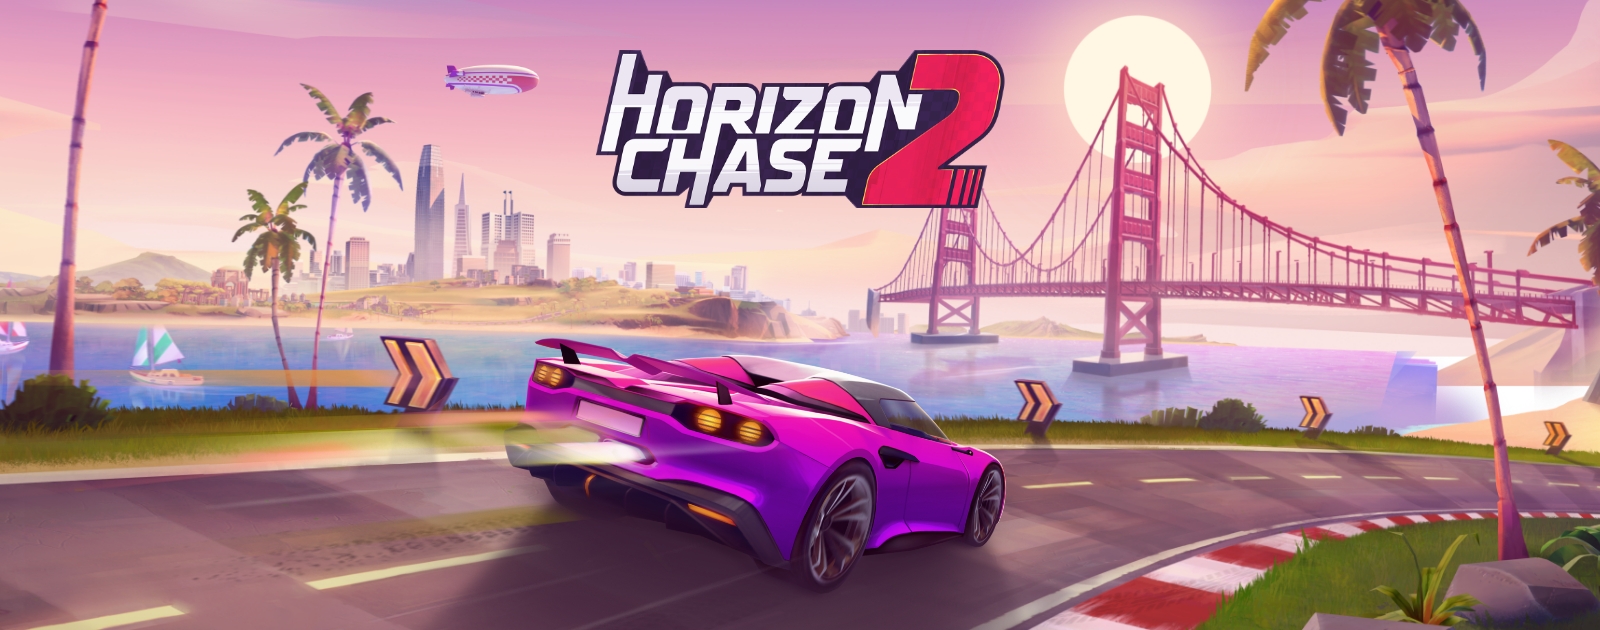 Horizon Chase 2 - Chronos